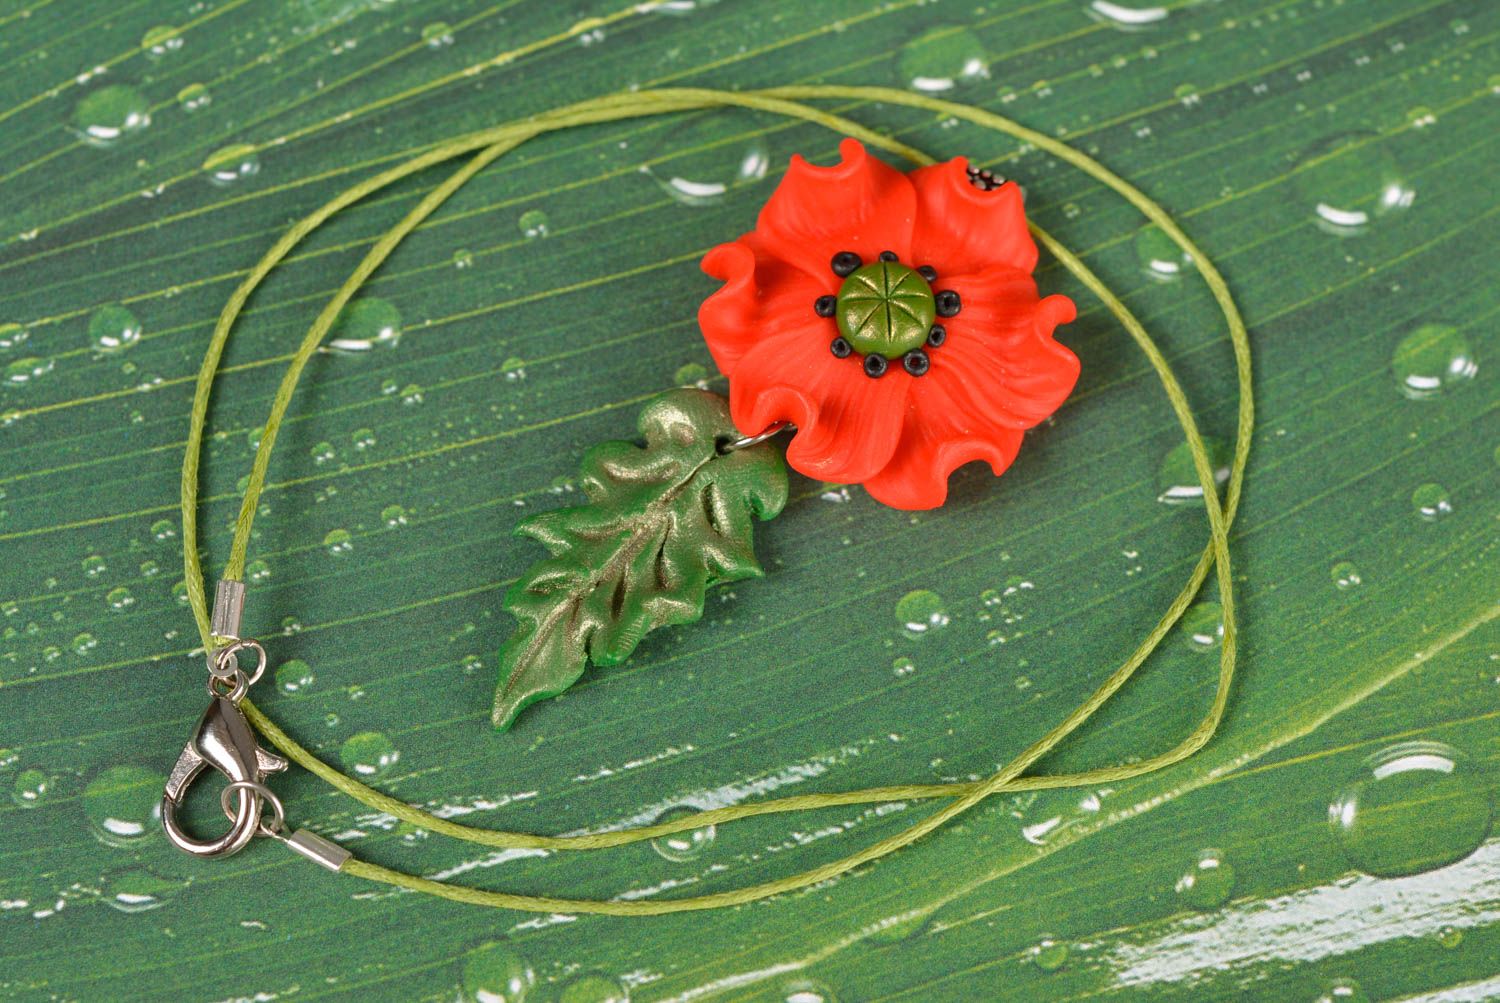 Кулон цветок из полимерной глины на зеленом шнурке красный мак ручная работа фото 1